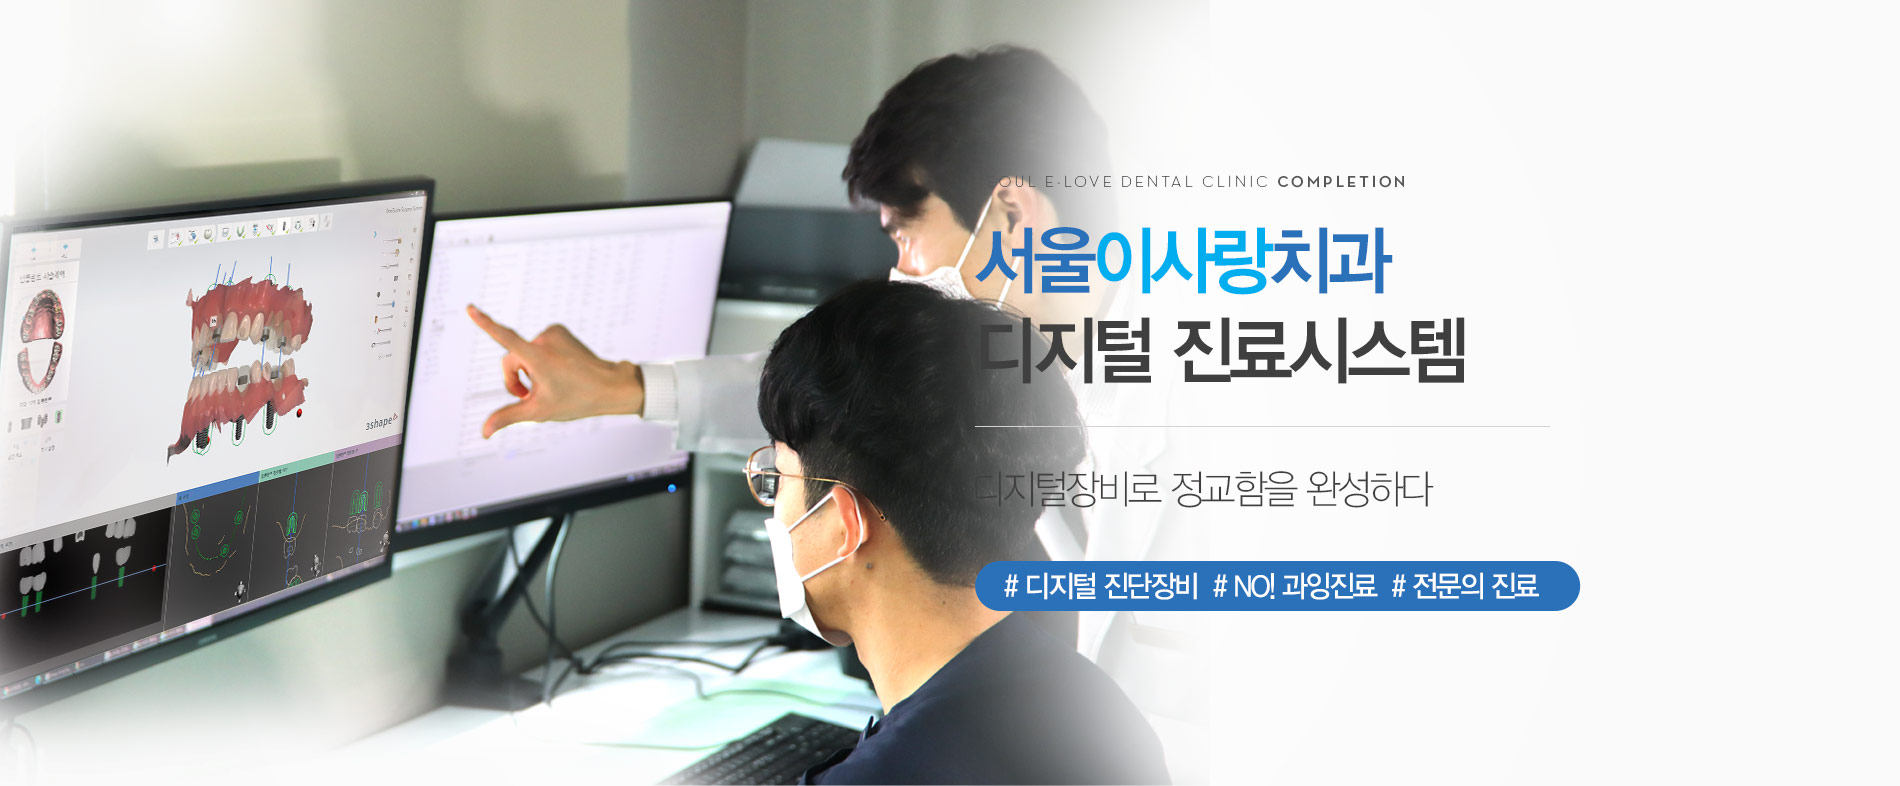 디지털장비로 정교함을 완성하다 서울이사랑치과 디지털 진료시스템